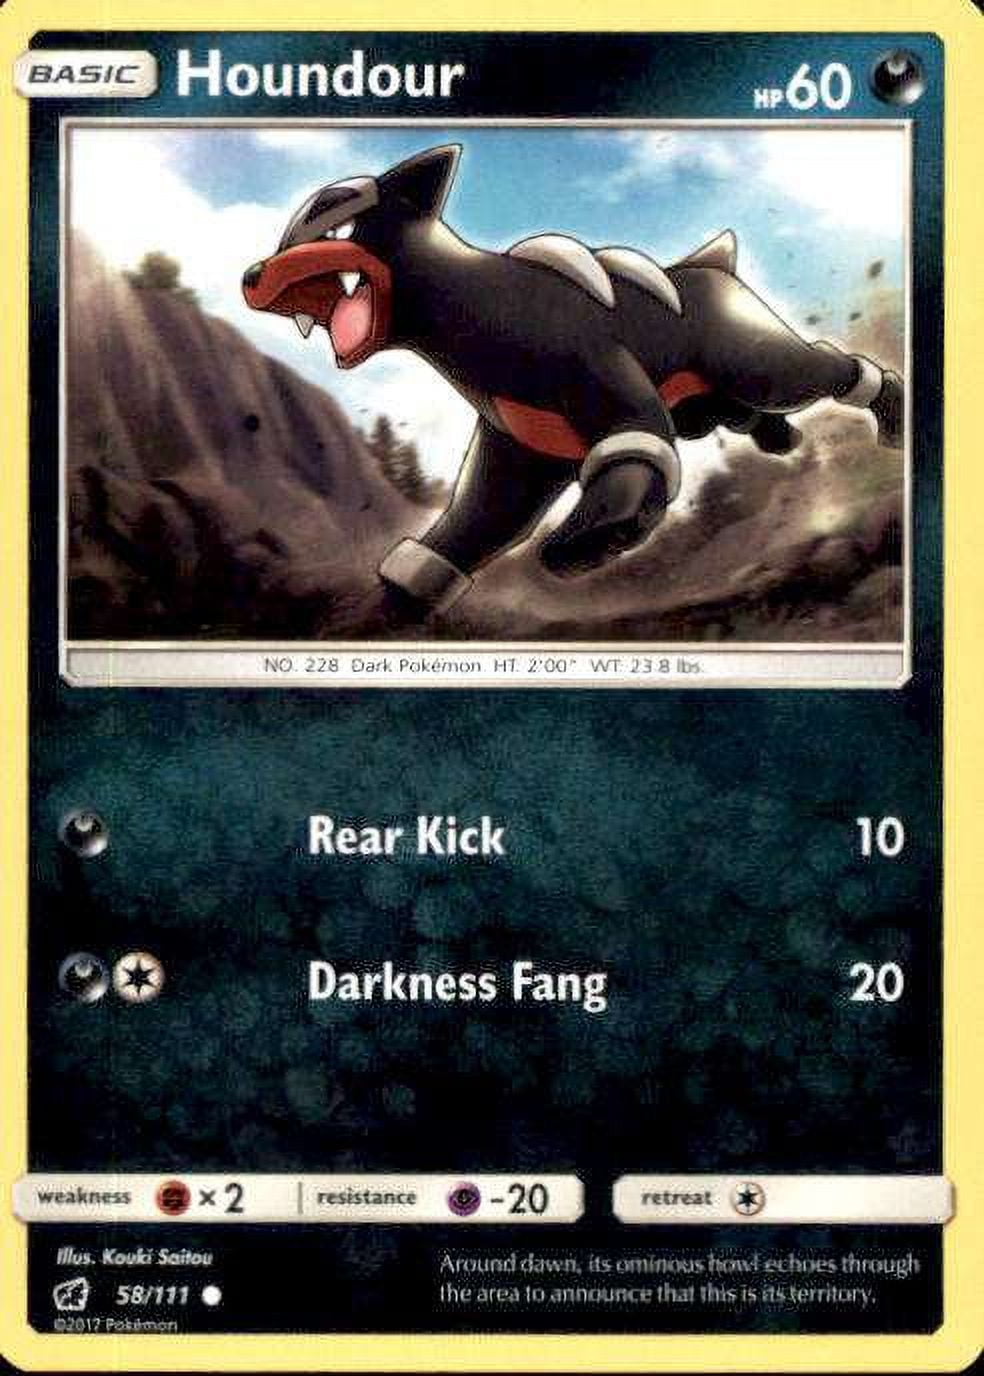 Pokémon: Dawn of Darkness